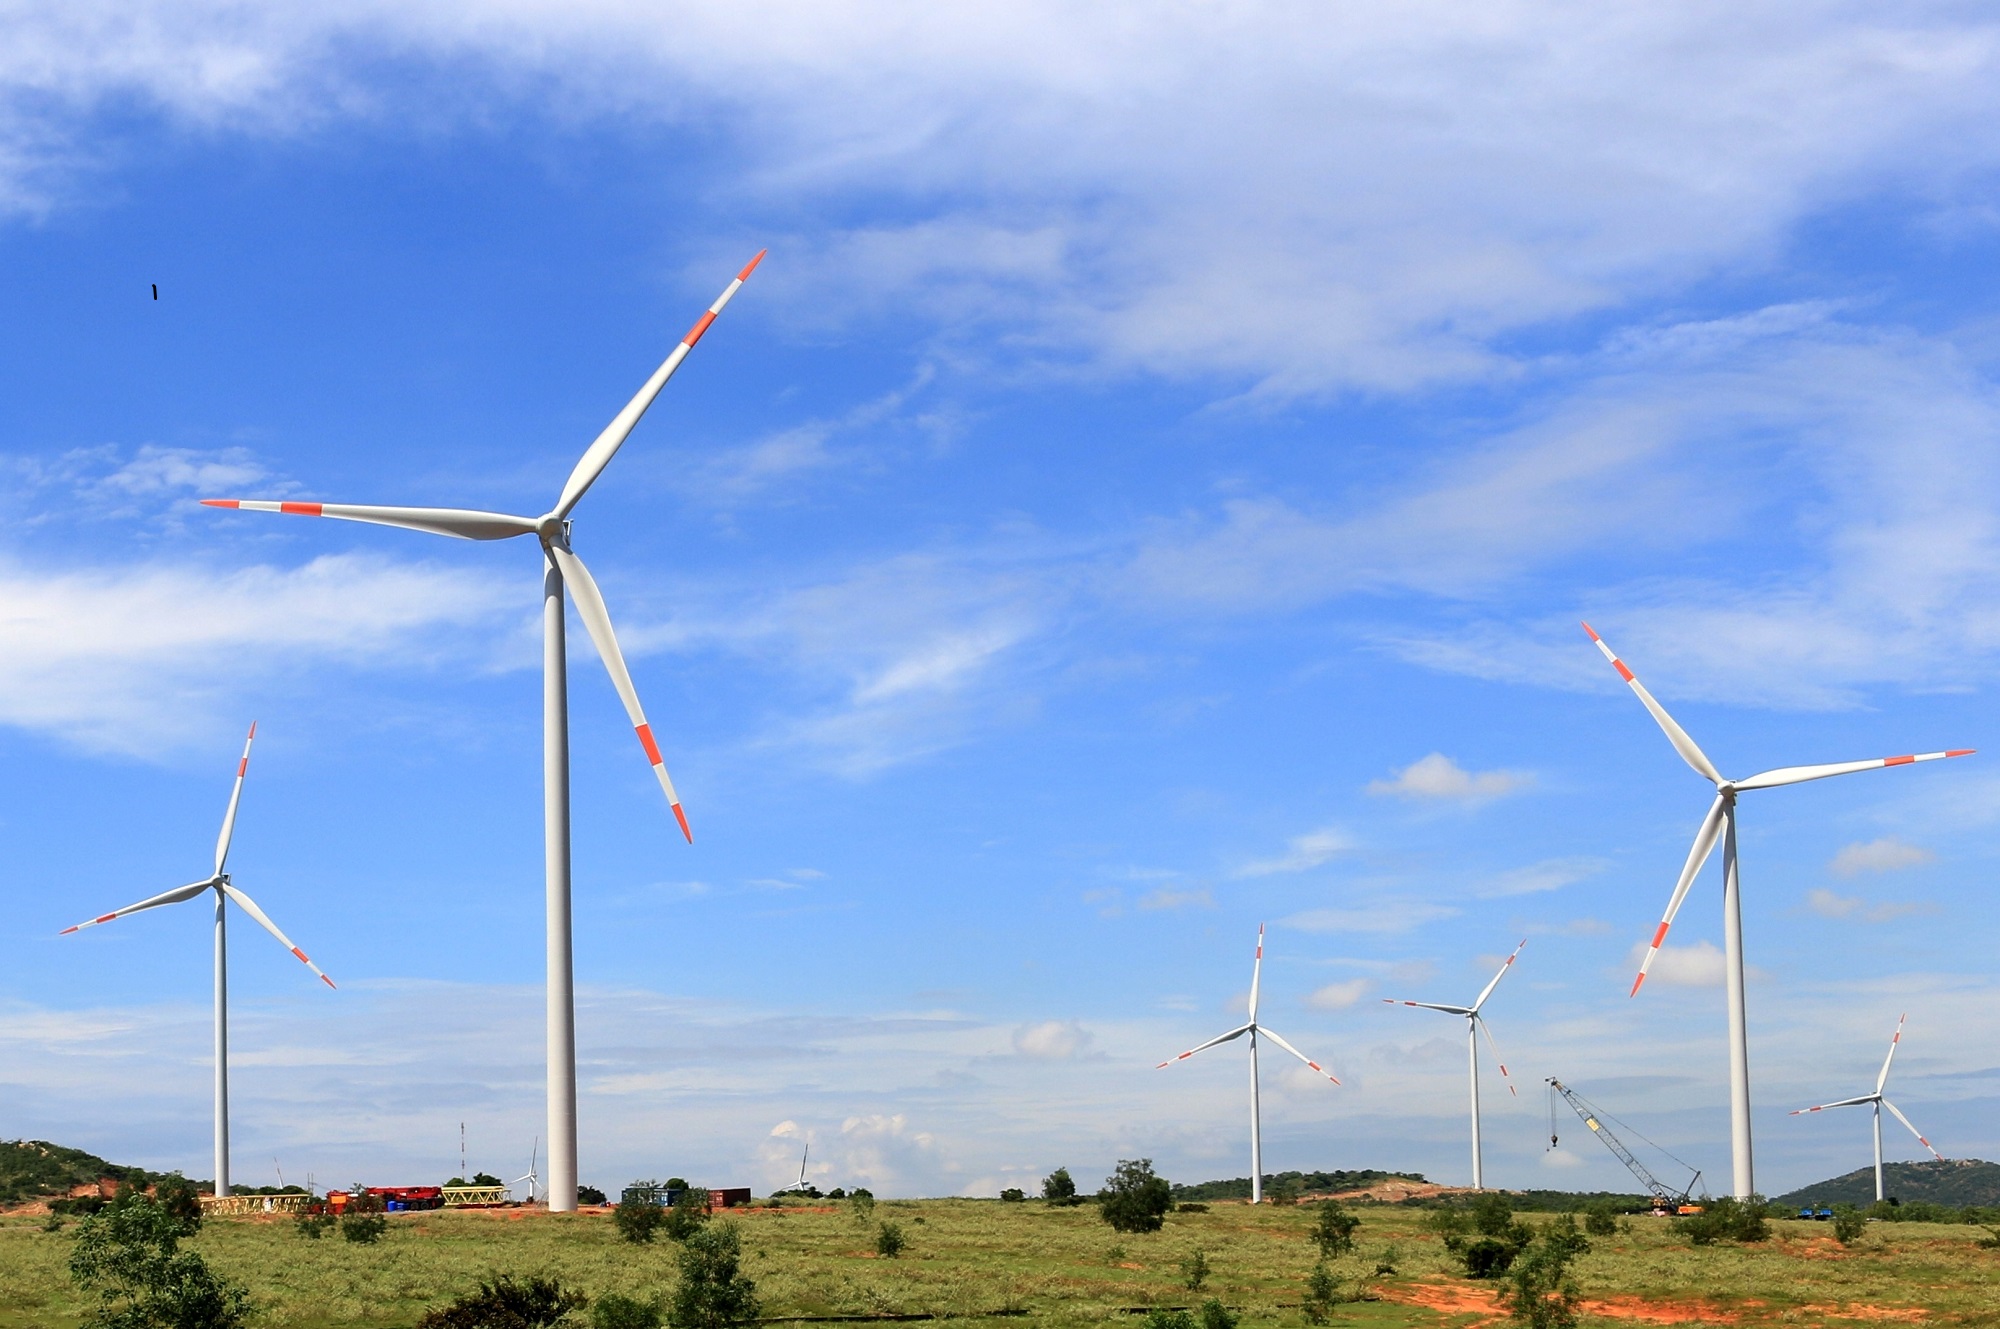 ADB ký khoản vay xanh để phát triển 3 trang trại điện gió ở Quảng Trị